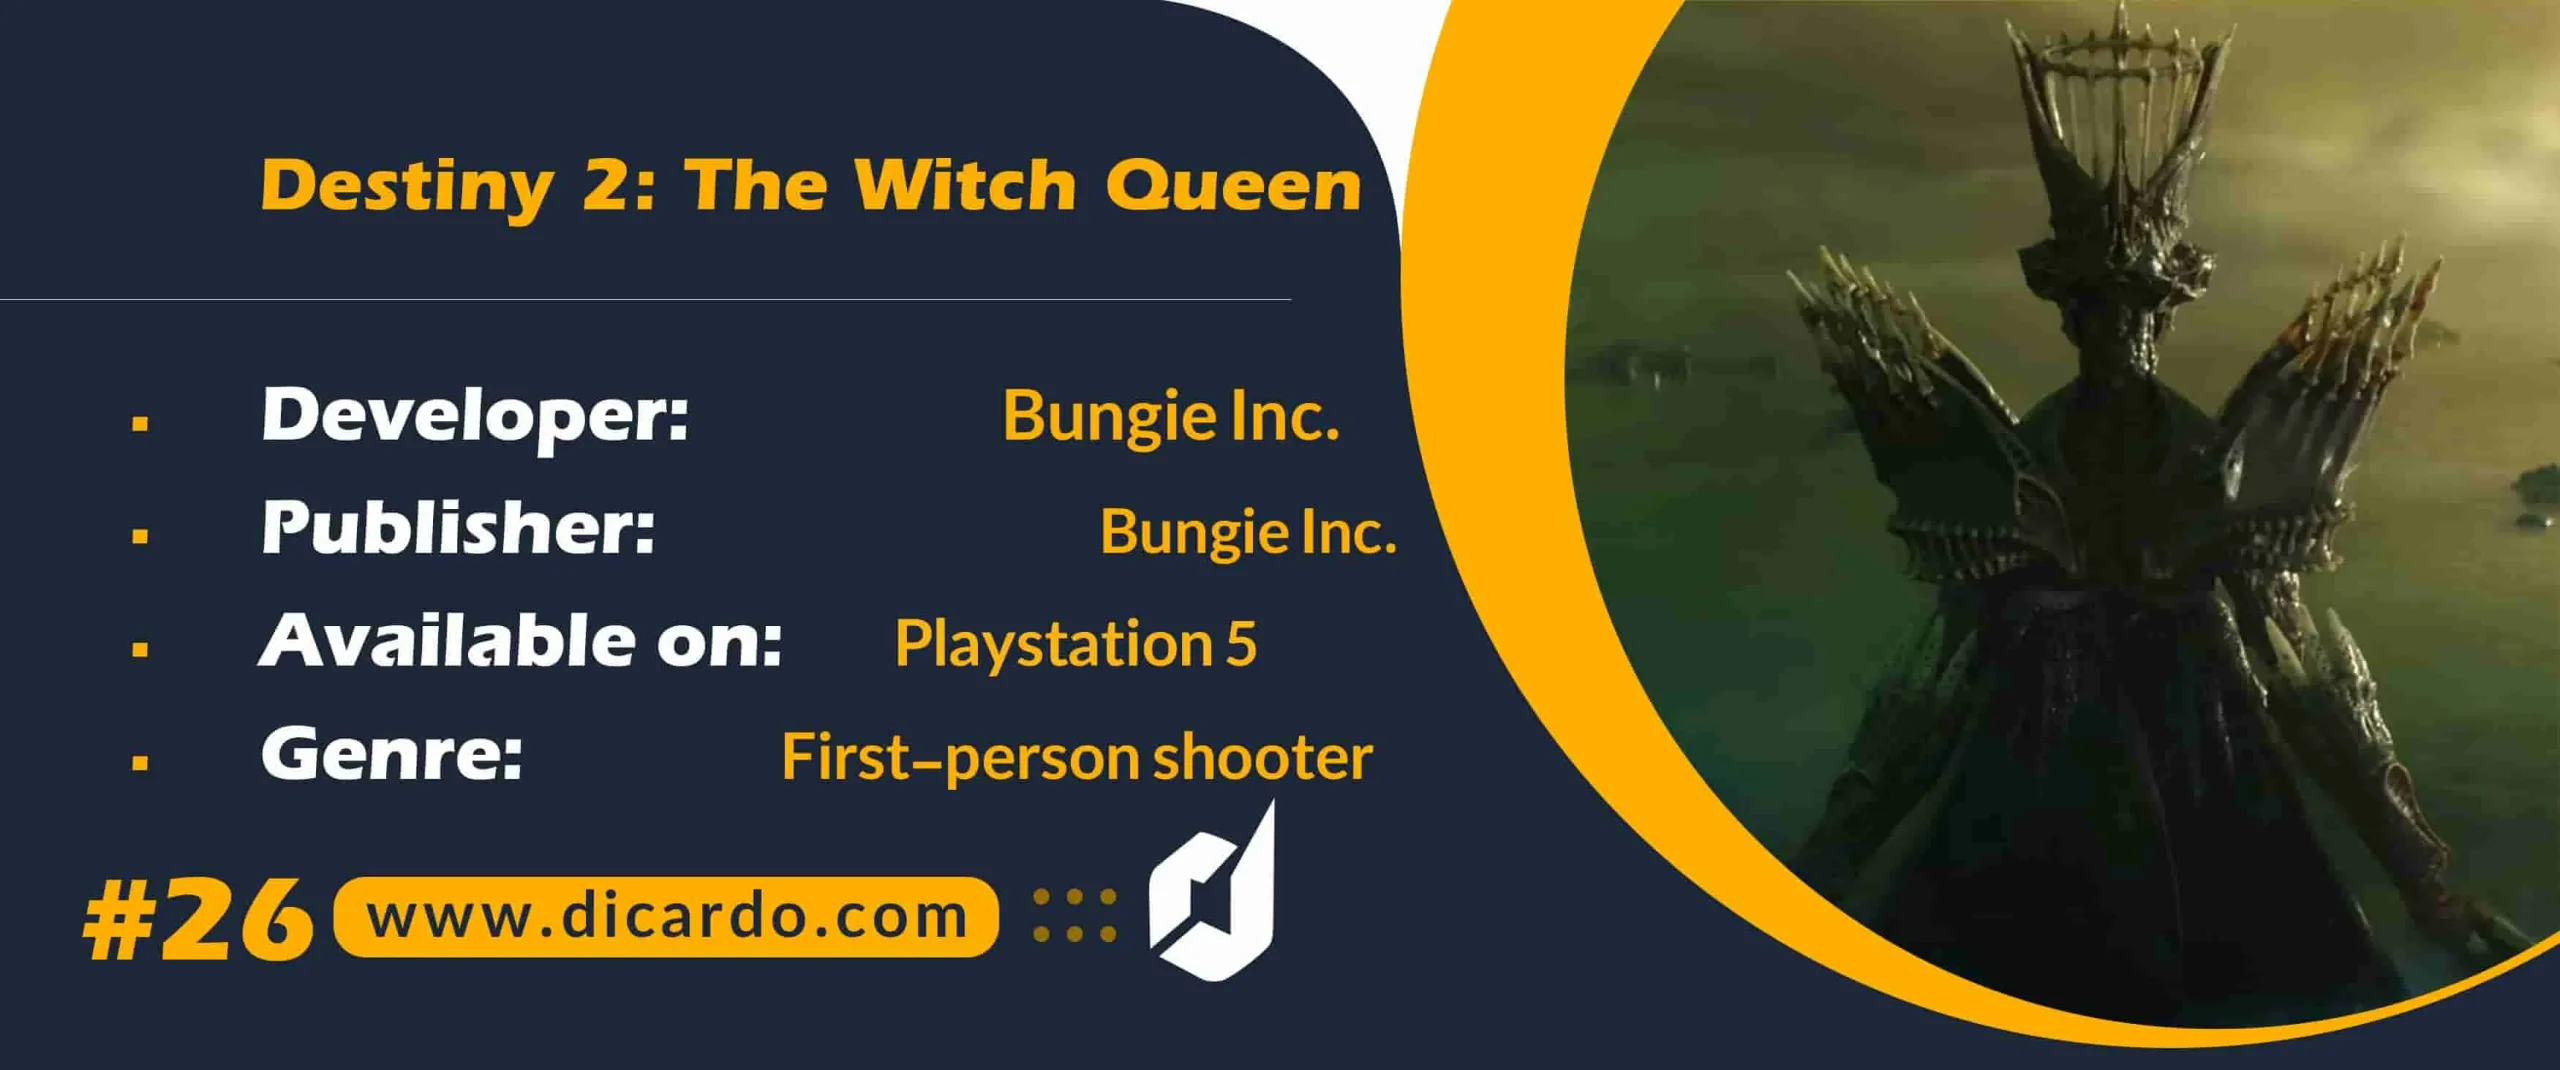 #26 دستینی 2 د ویچ کوئین Destiny 2: The Witch Queen